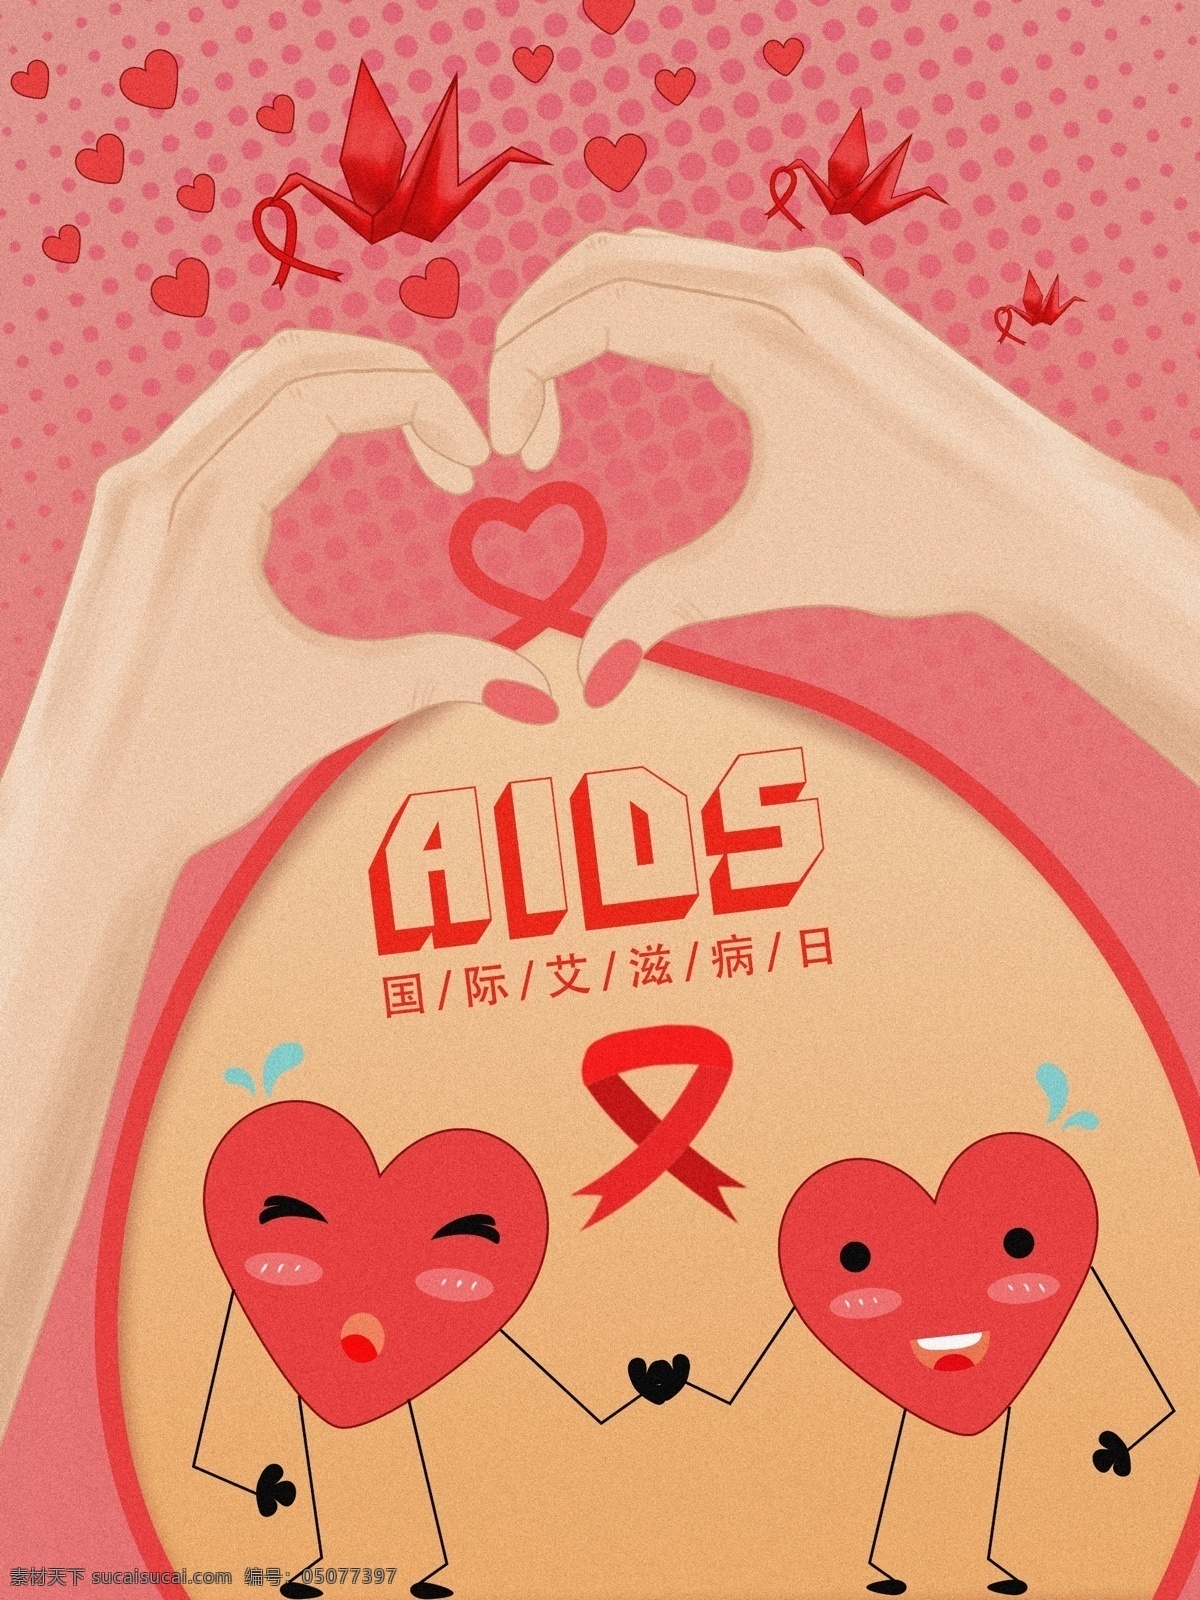 原创 国际 艾滋病 日 关爱 艾滋 病人 插画 节日 医疗 爱心 红丝带 国际艾滋病日 患者 纸鹤 aids